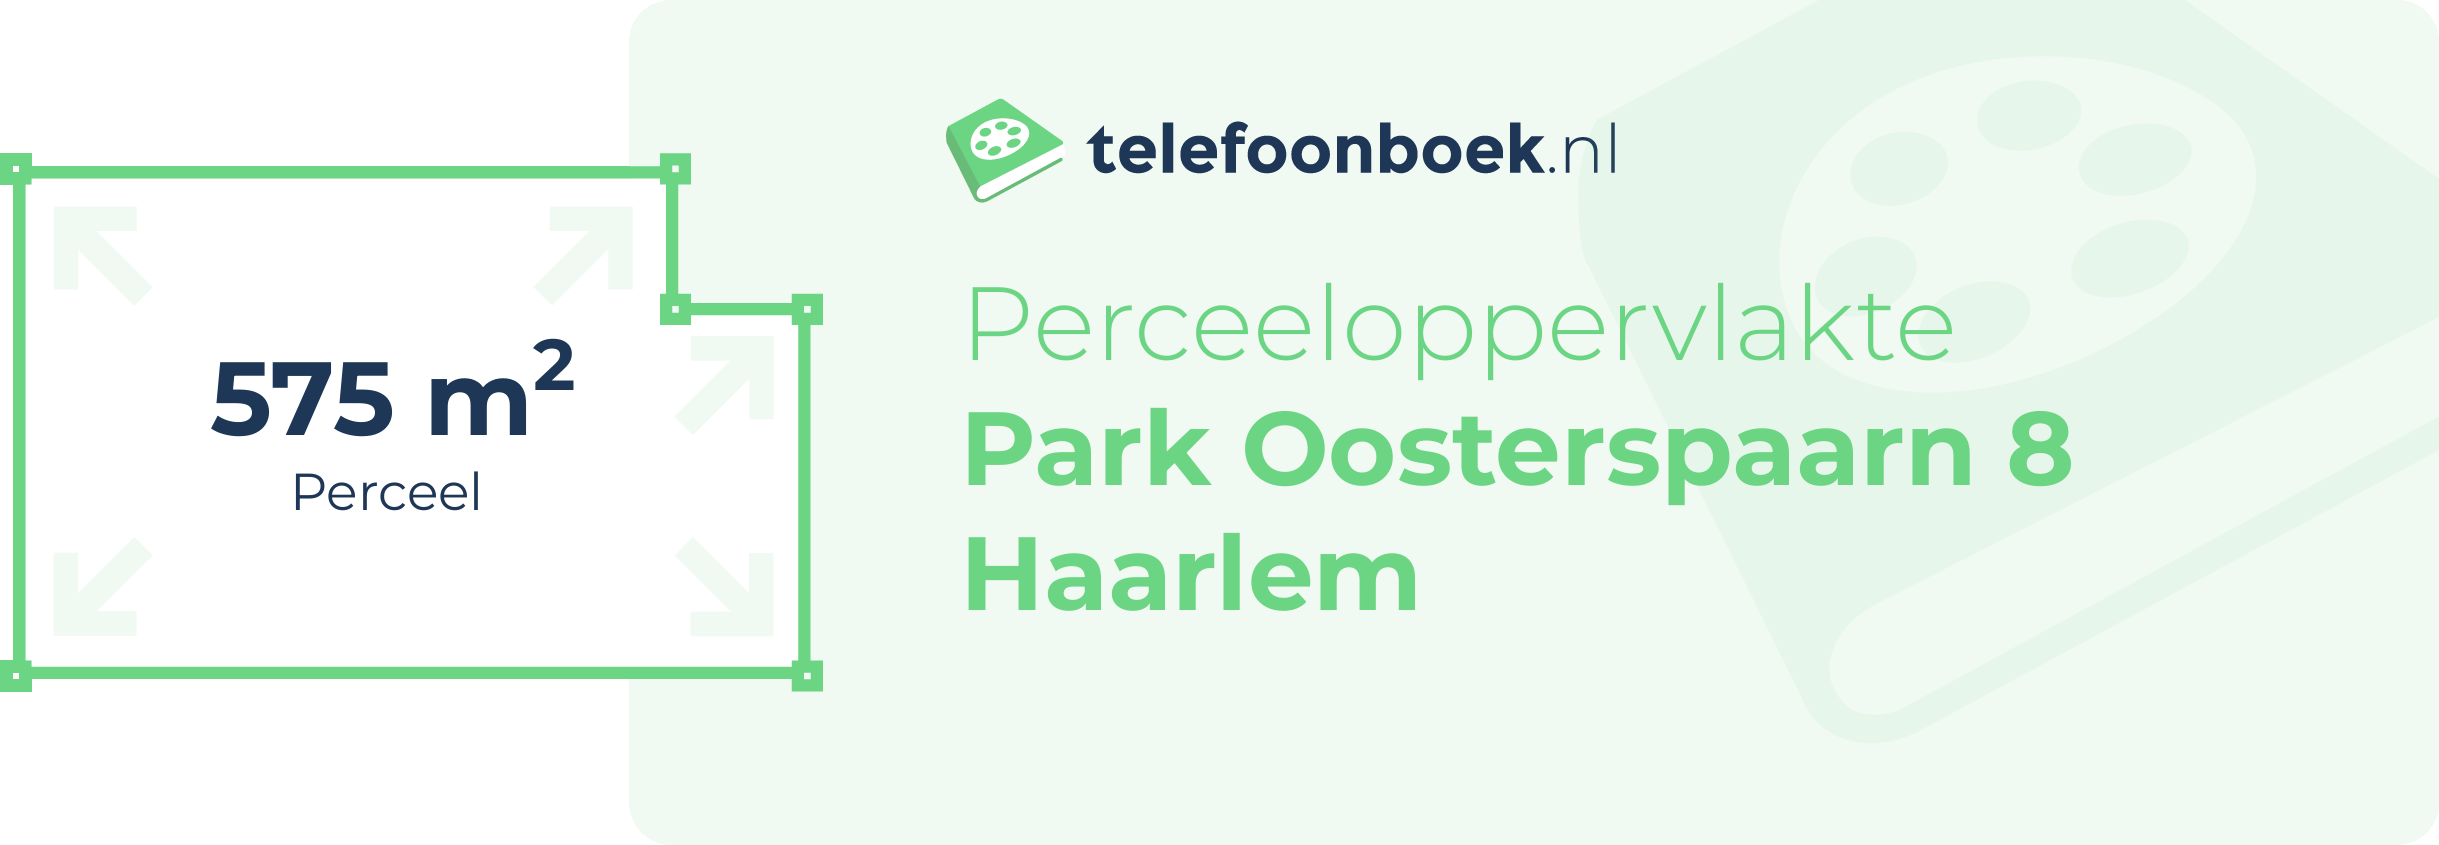 Perceeloppervlakte Park Oosterspaarn 8 Haarlem